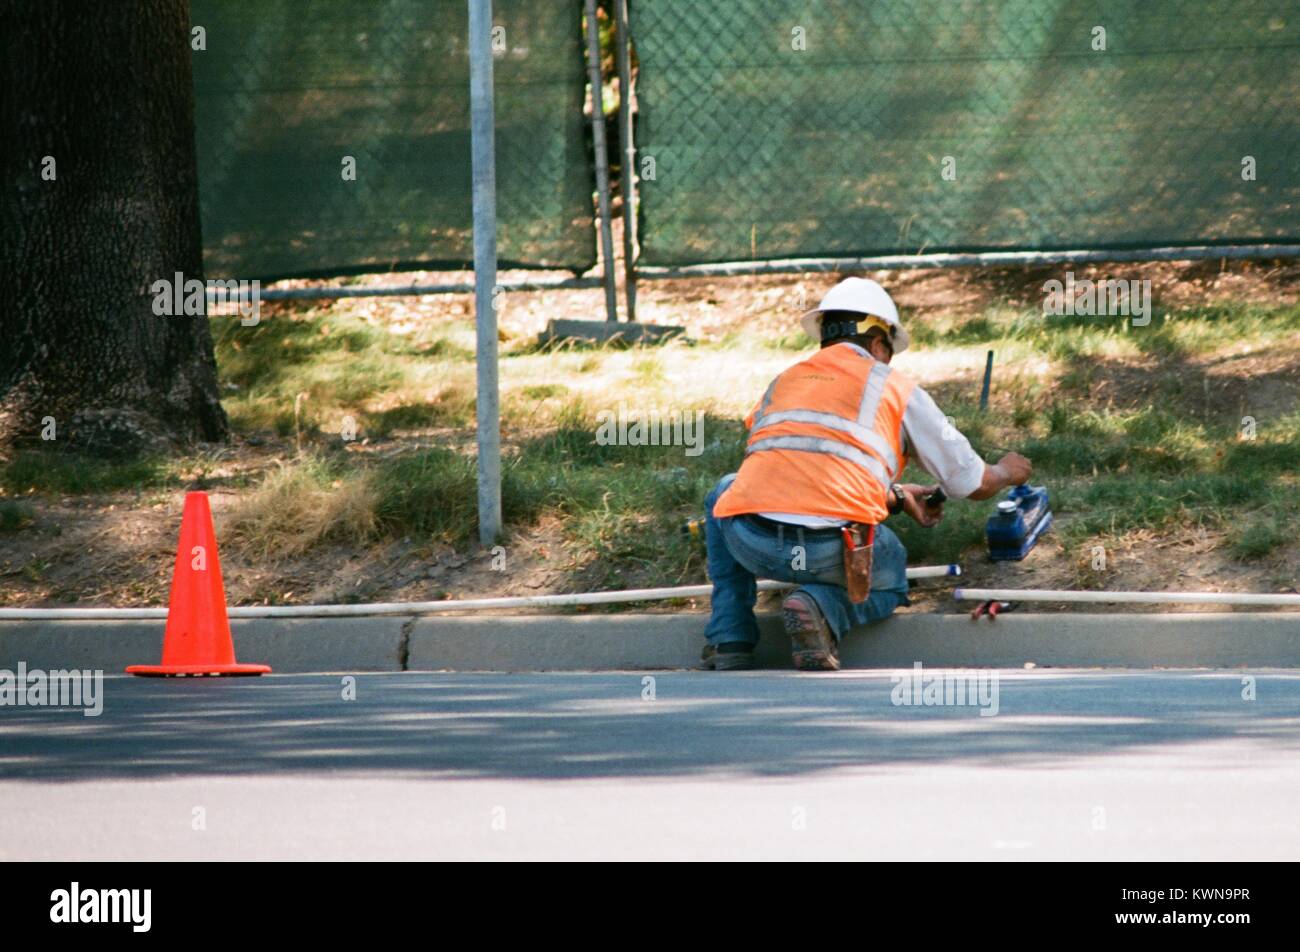 Un travailleur de la construction avec un gilet installe tuyaux en PVC à l'Apple Park, connu familièrement comme "le vaisseau spatial", le nouveau quartier général d'Apple Inc dans la Silicon Valley ville de Cupertino, Californie, 25 juillet 2017. Banque D'Images